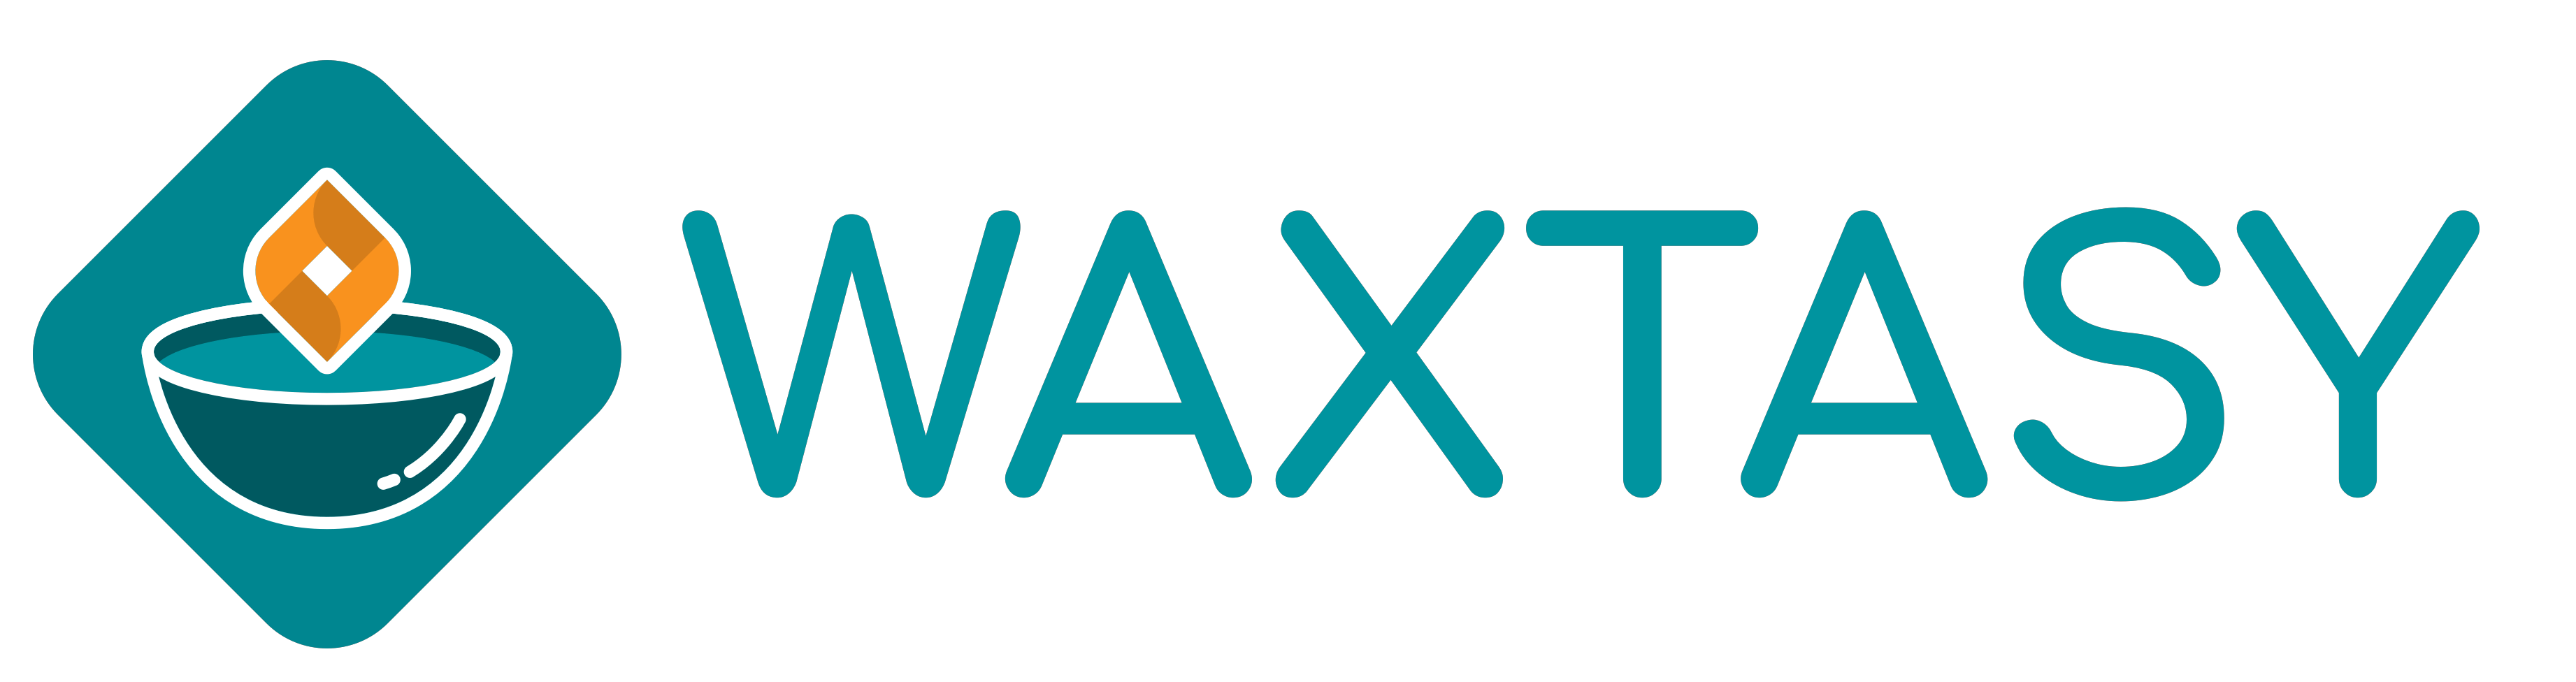 WAXTASY Logo